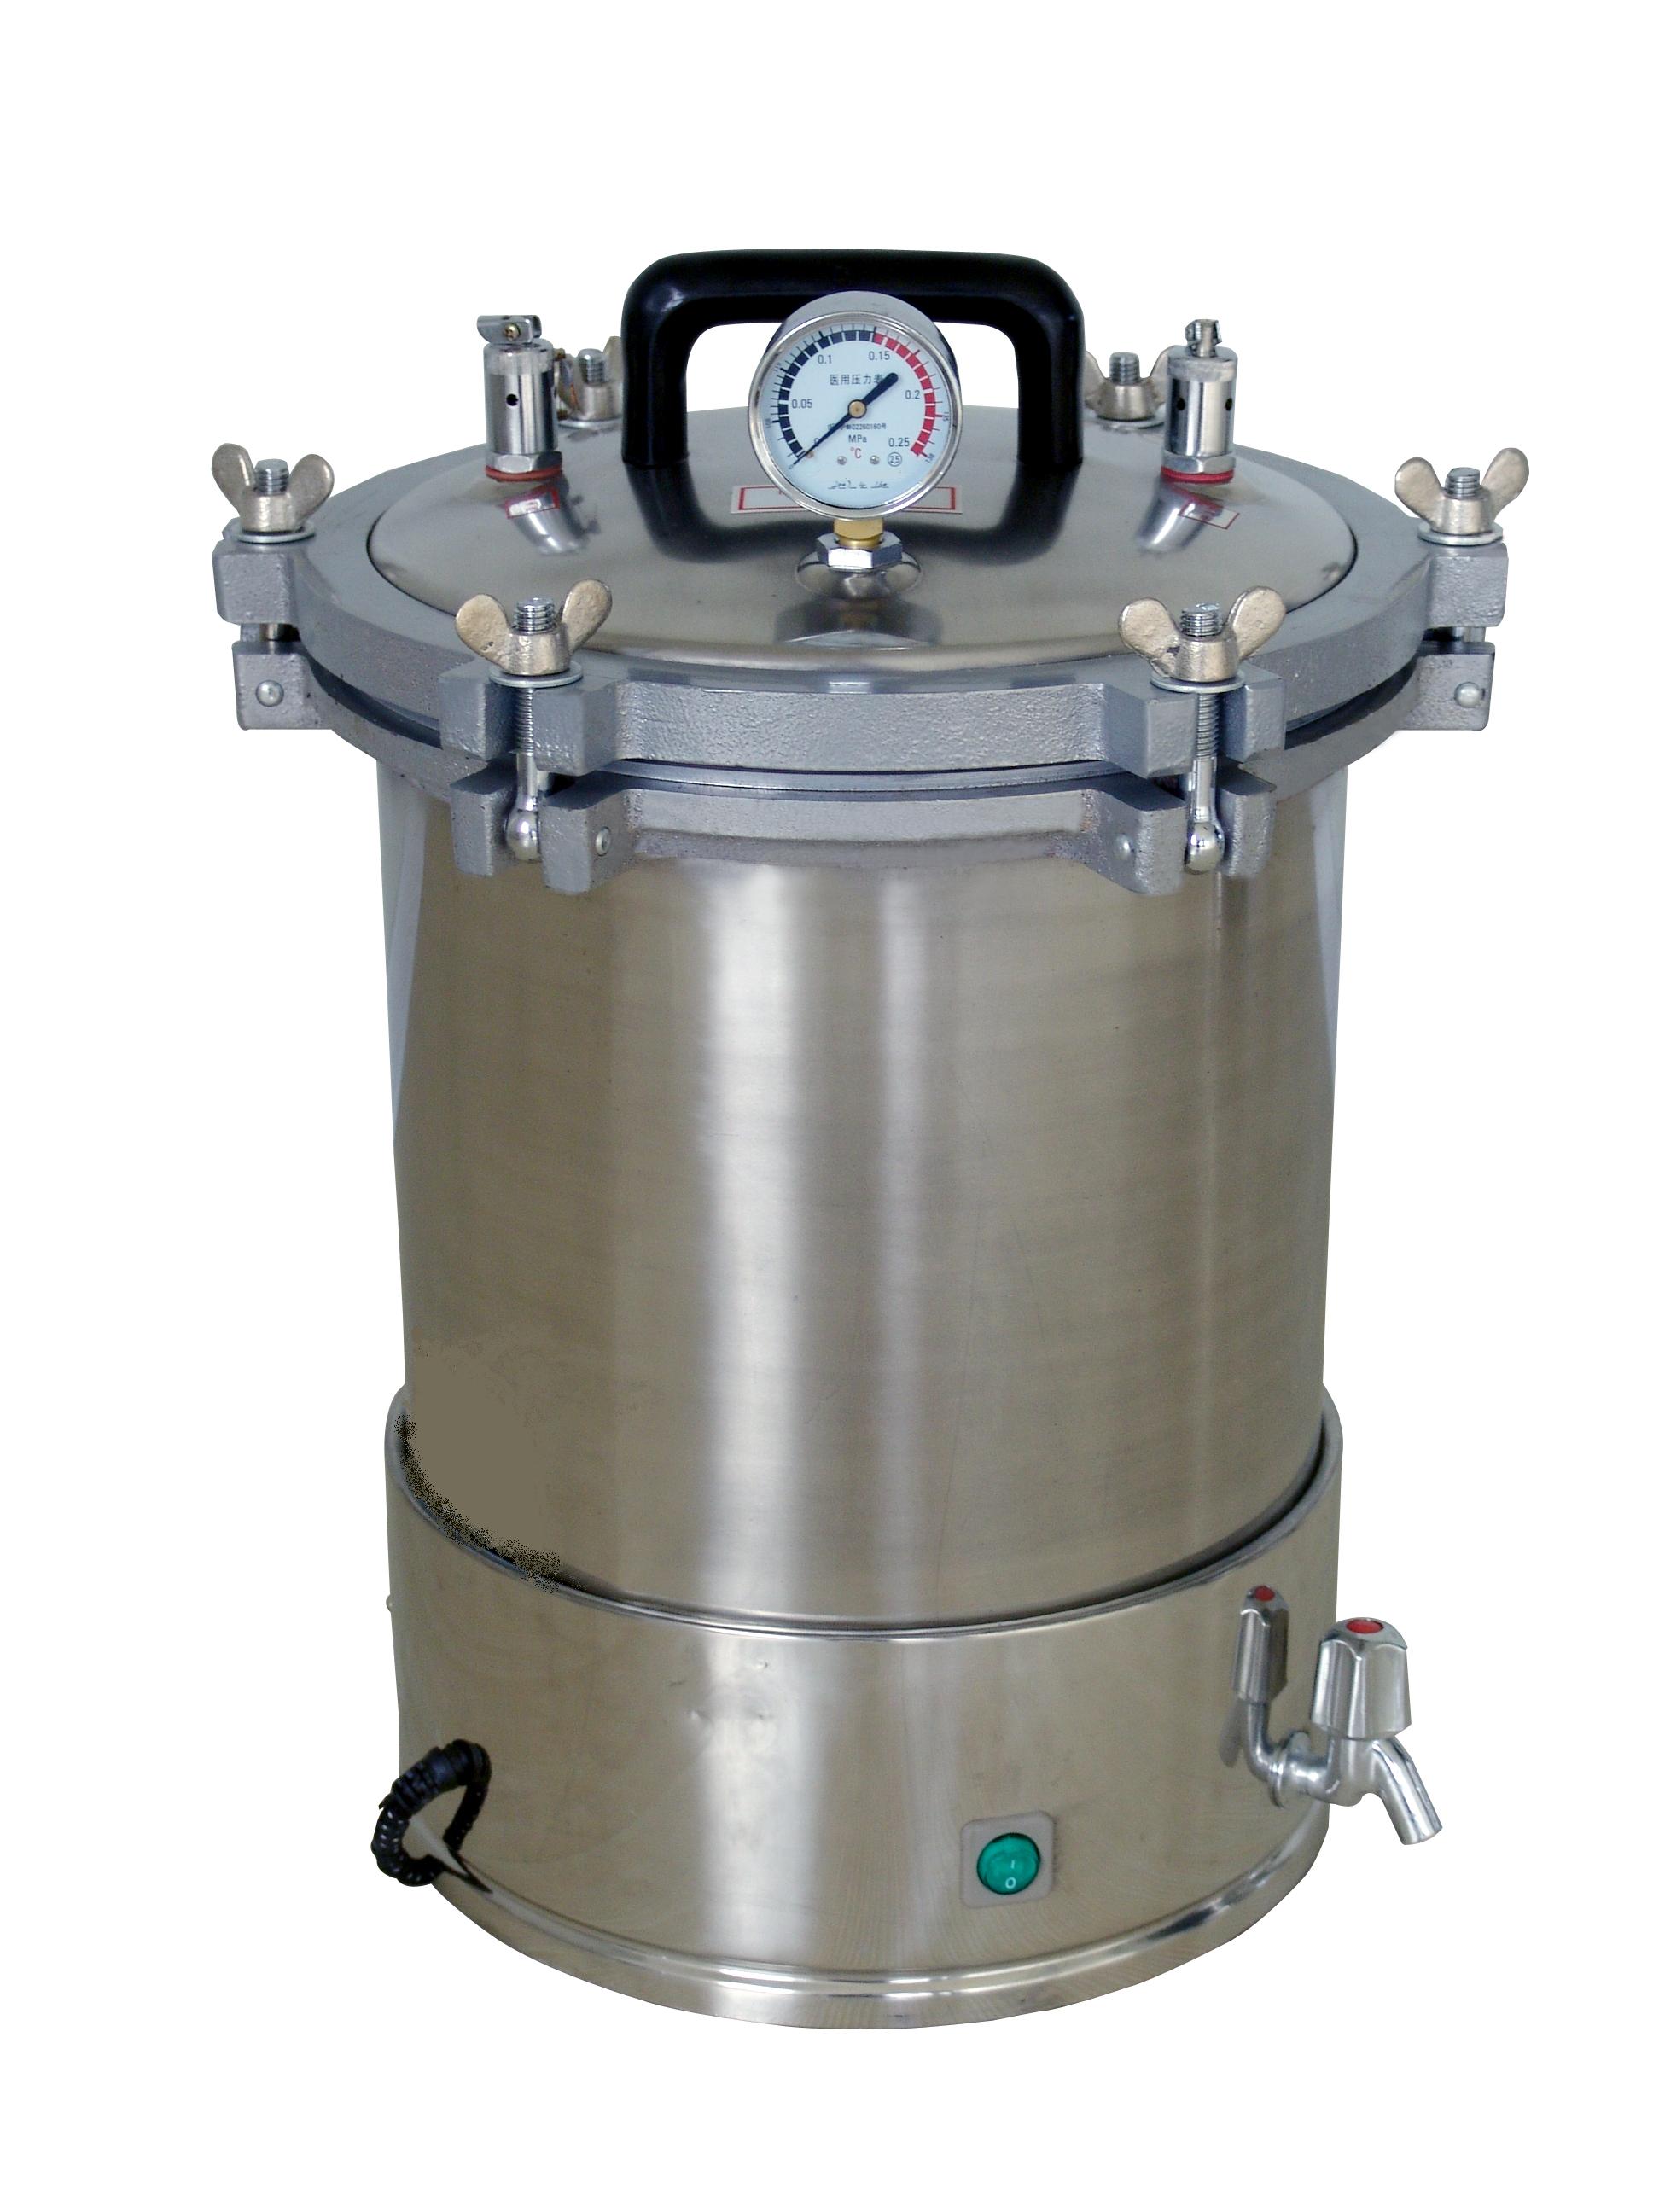 高壓滅菌鍋 型號:LM61-SG46-280S